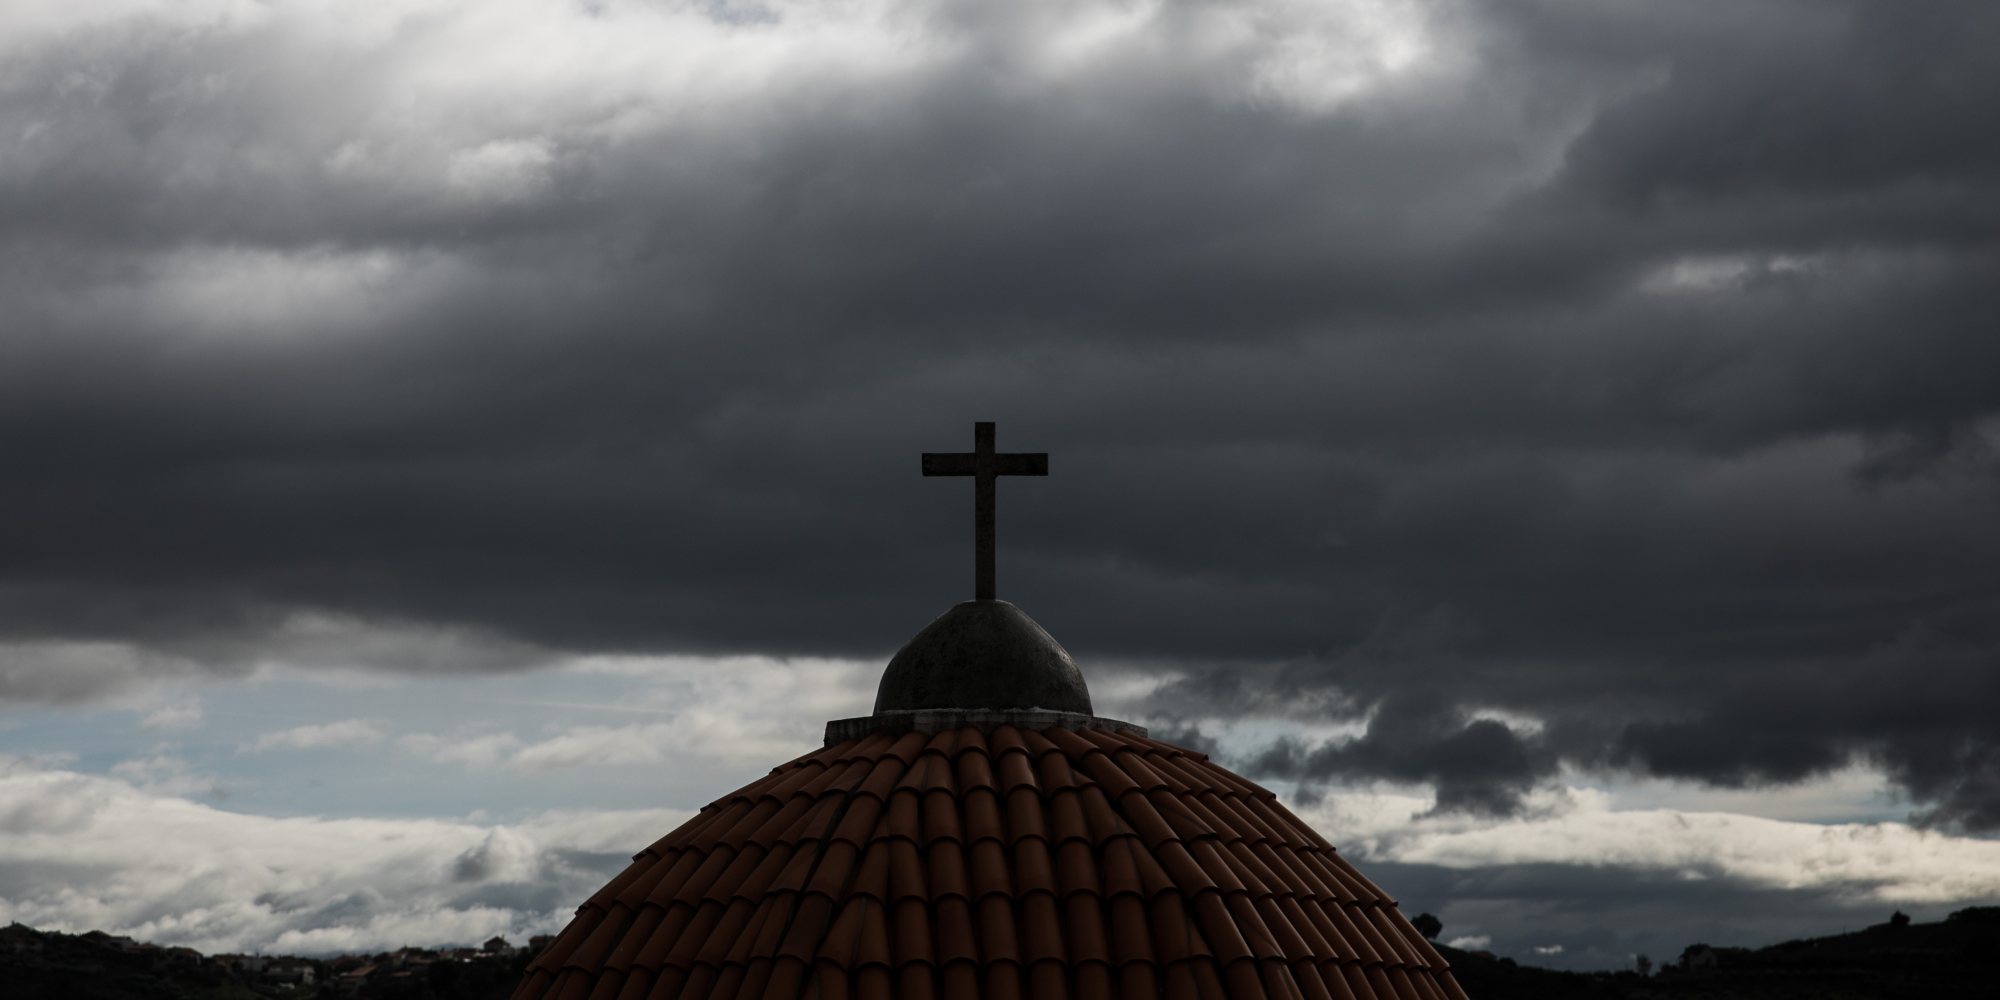 Reportagem abusos sexuais na igreja católica, Convento de Balsamão JOÃO PORFÍRIO/OBSERVADOR